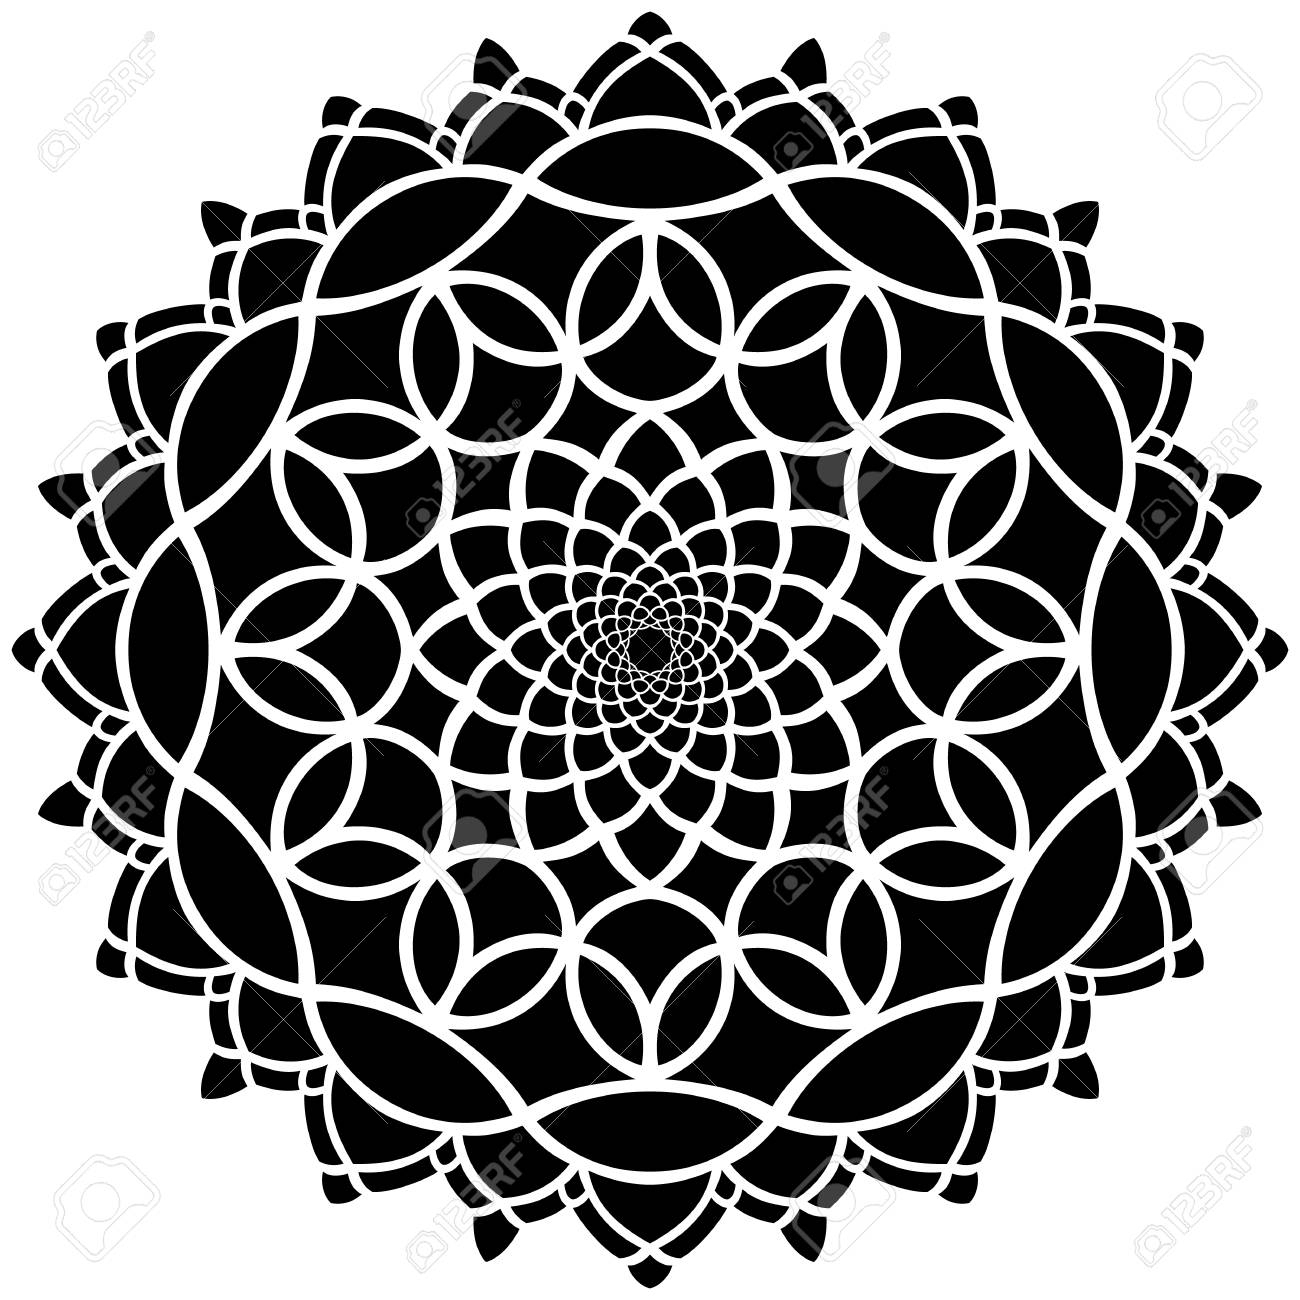 Motif De Symétrie Rond Noir Et Blanc, Mandala, Rosace concernant Image De Rosace 